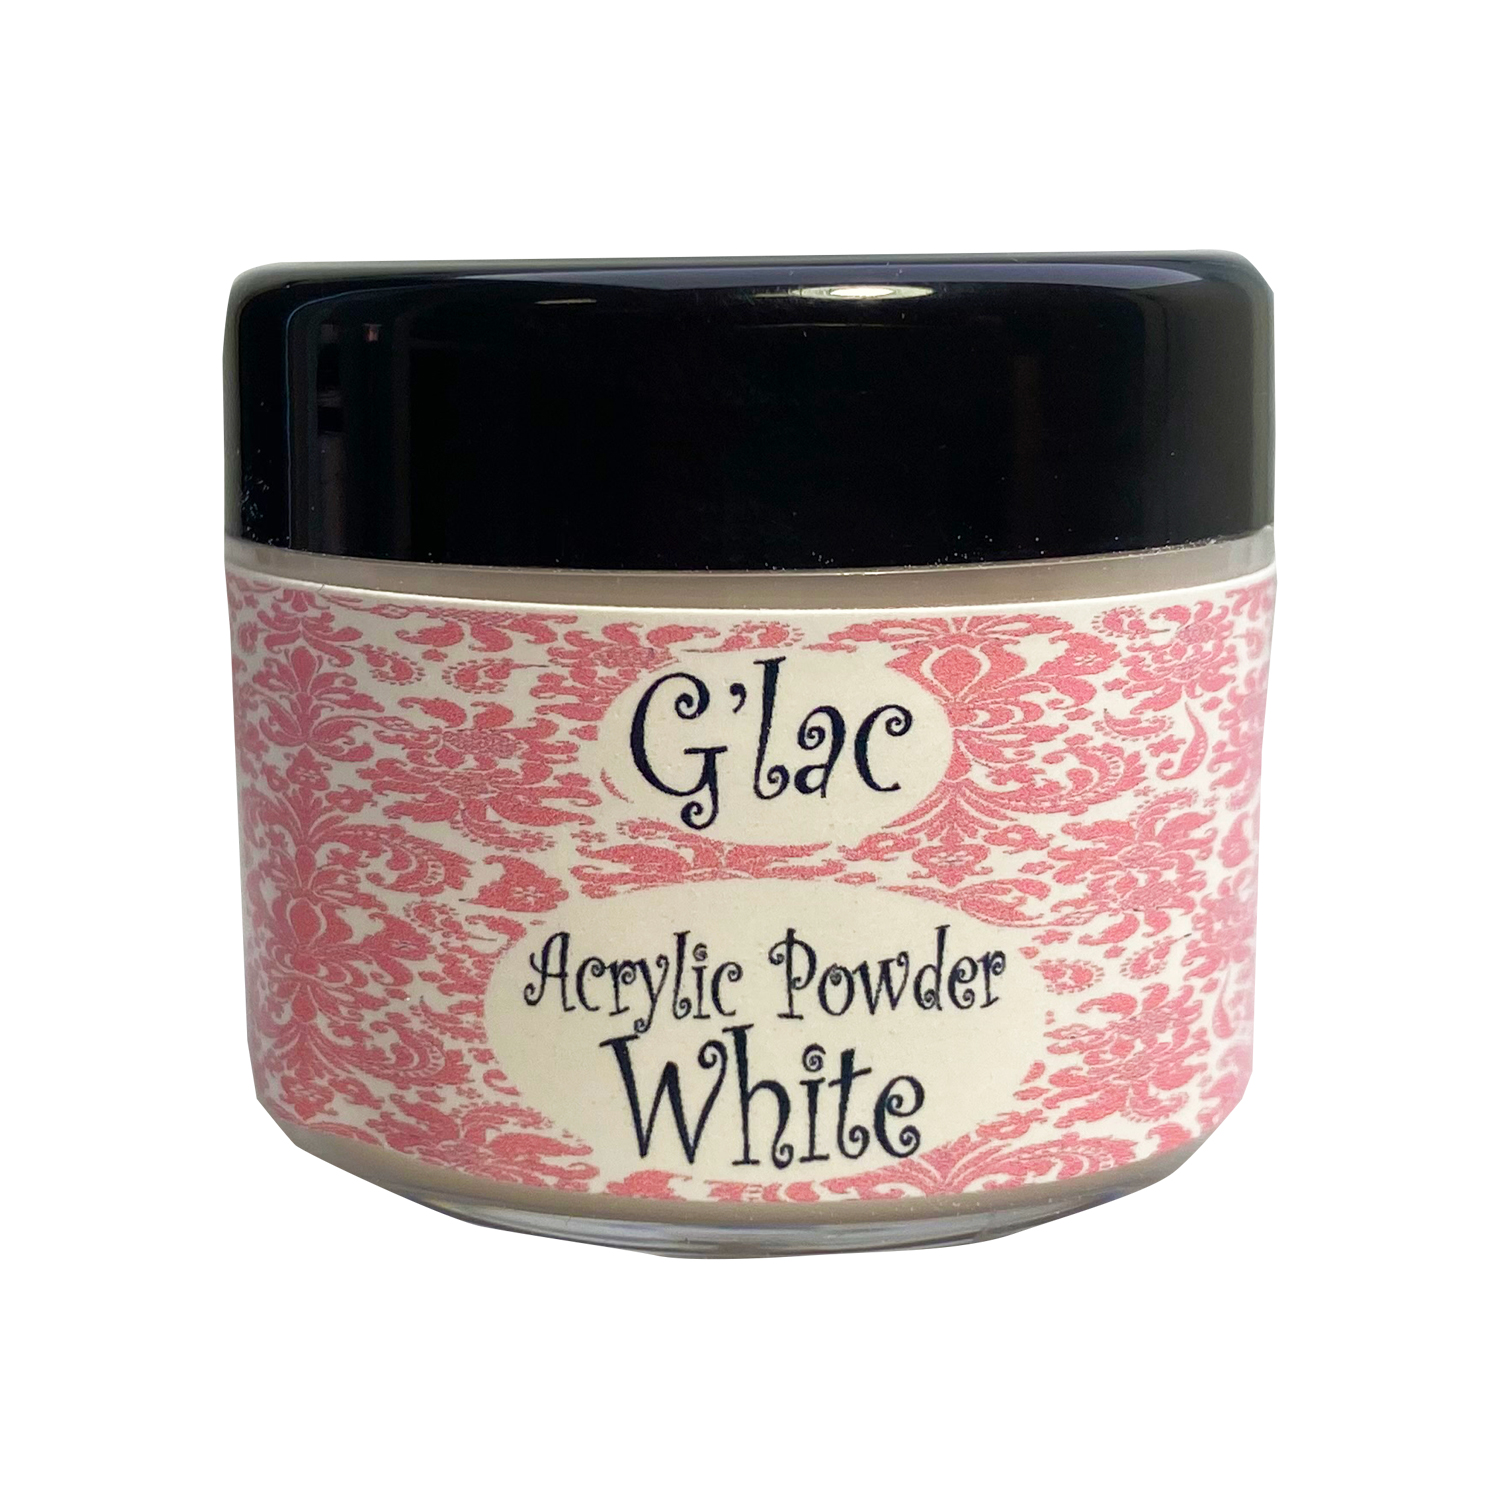 G’lac acryl Poeder Clear Pink White ideaal voor het modeleren van acryl nagels, te sint Niklaas acryl poeder ideaal voor nagel verlengingen